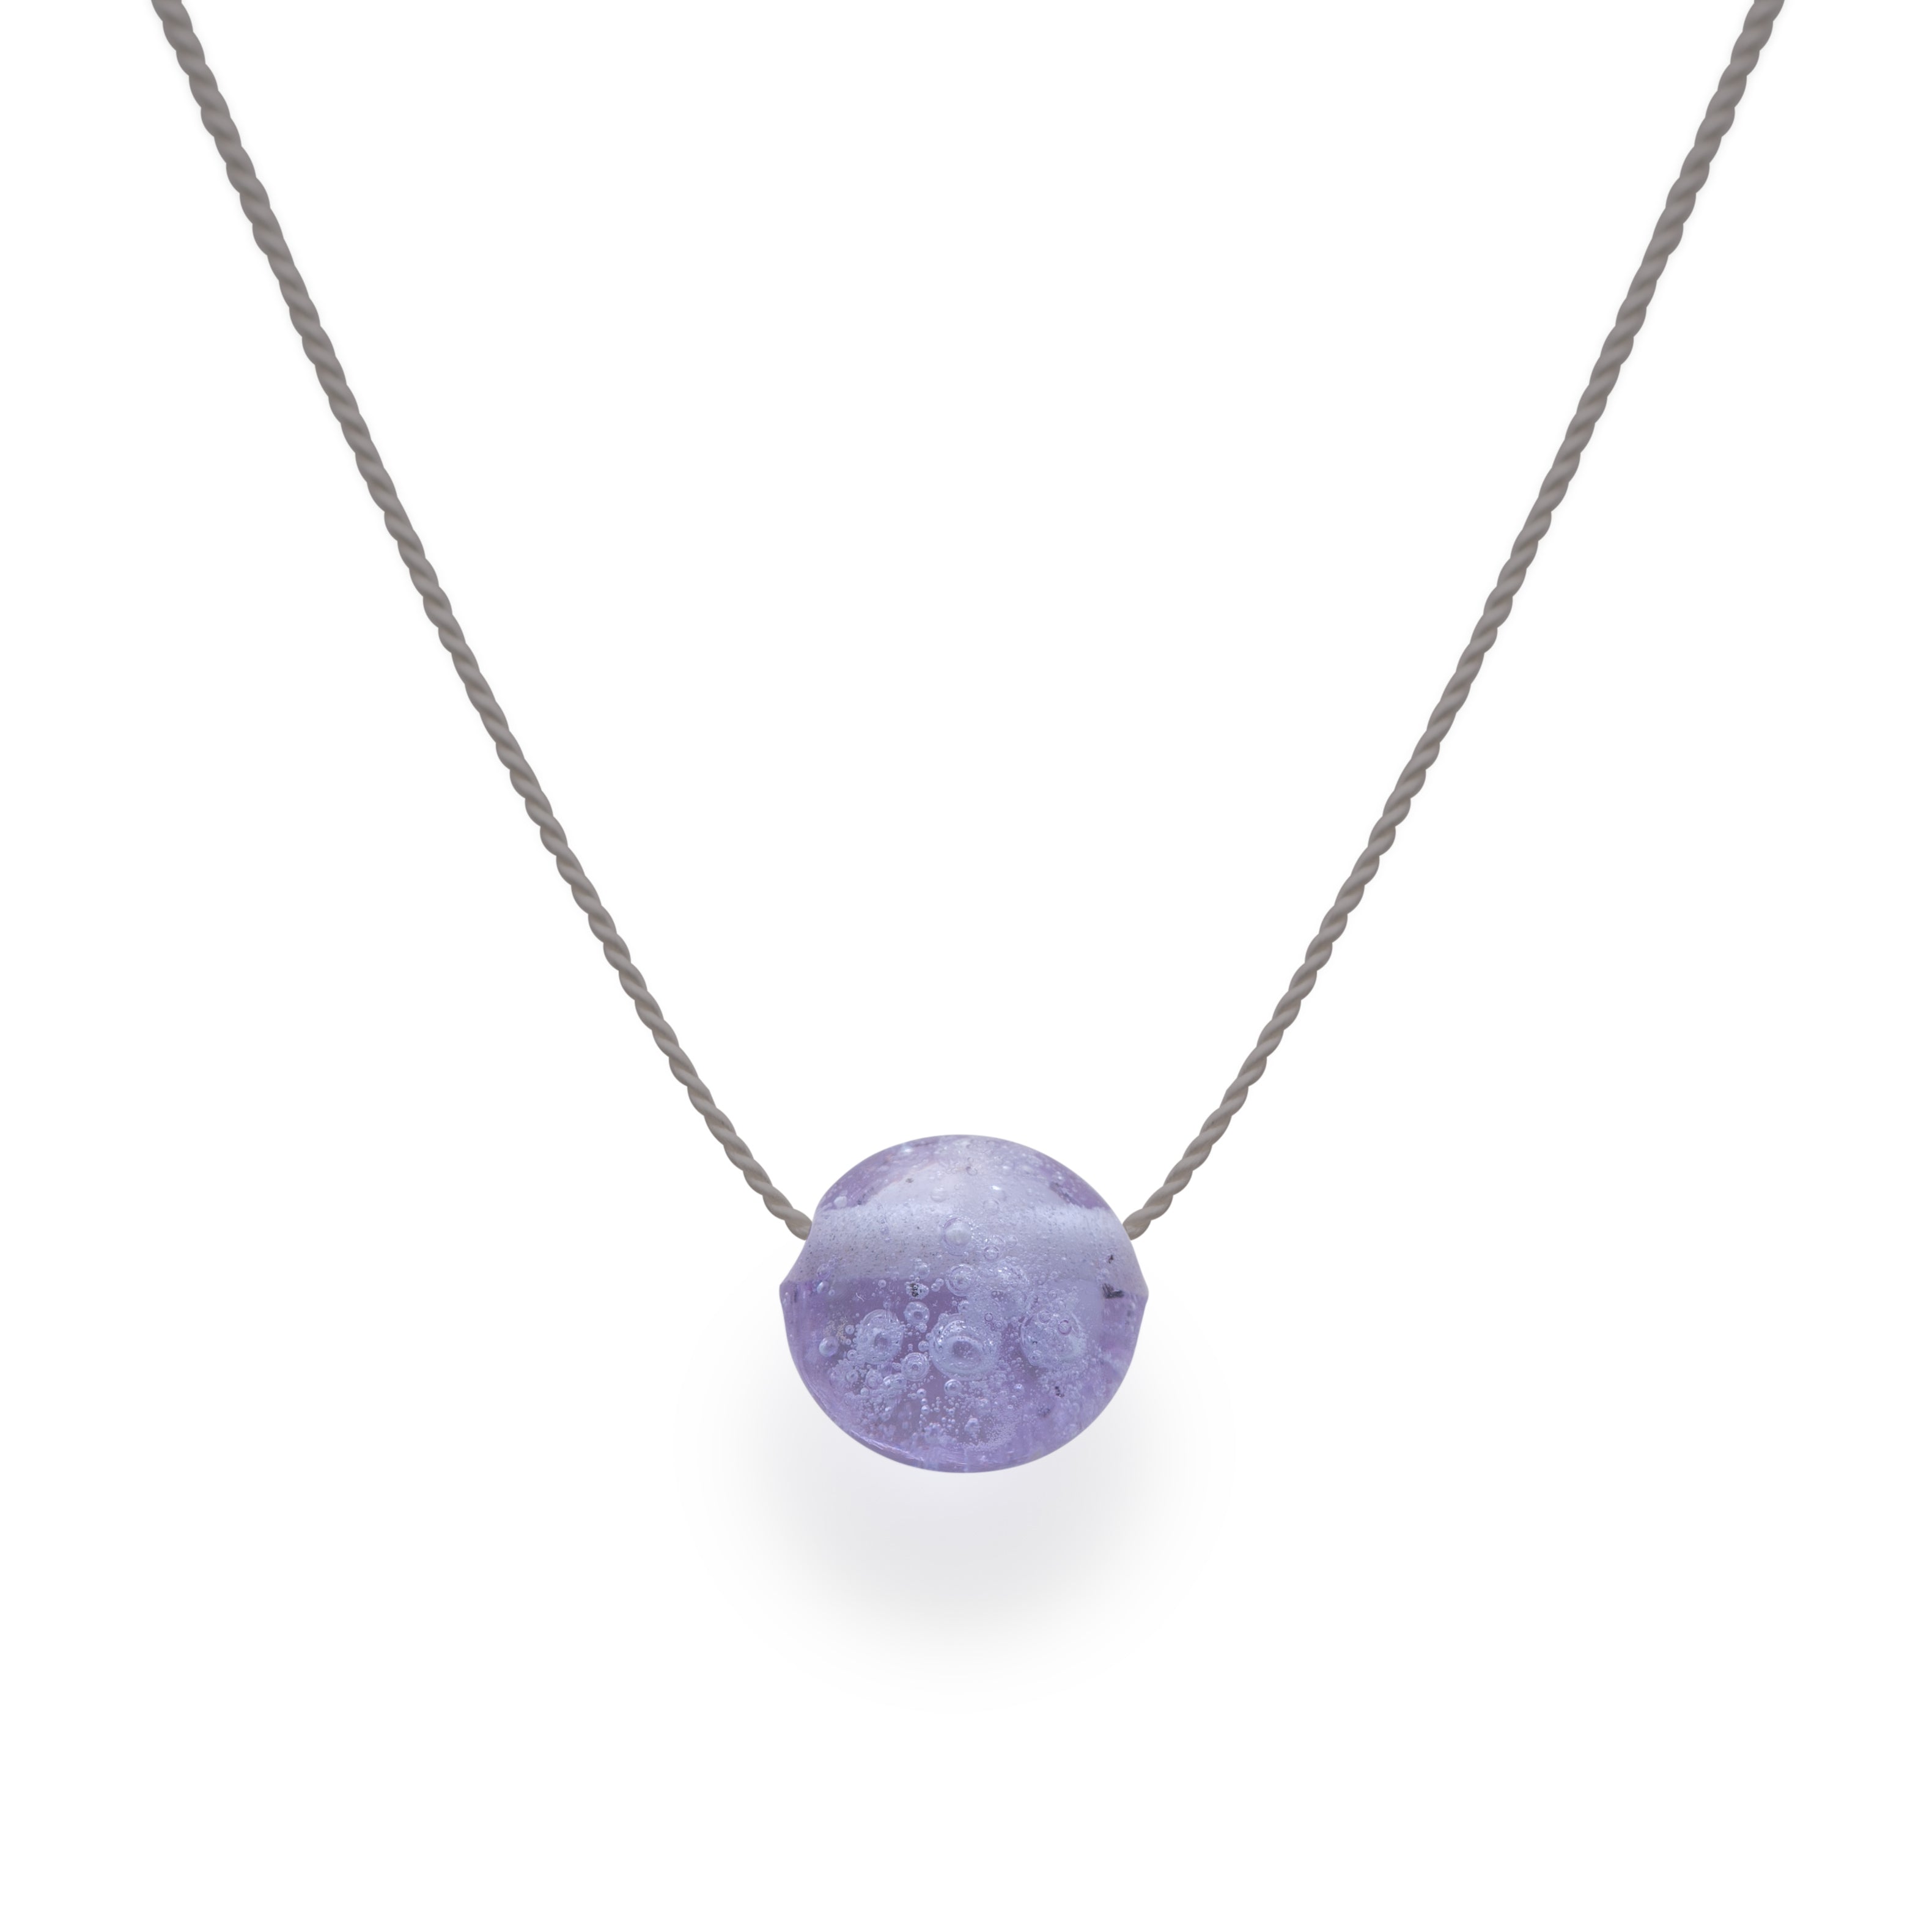 Sand Pebble Necklace - Lavender